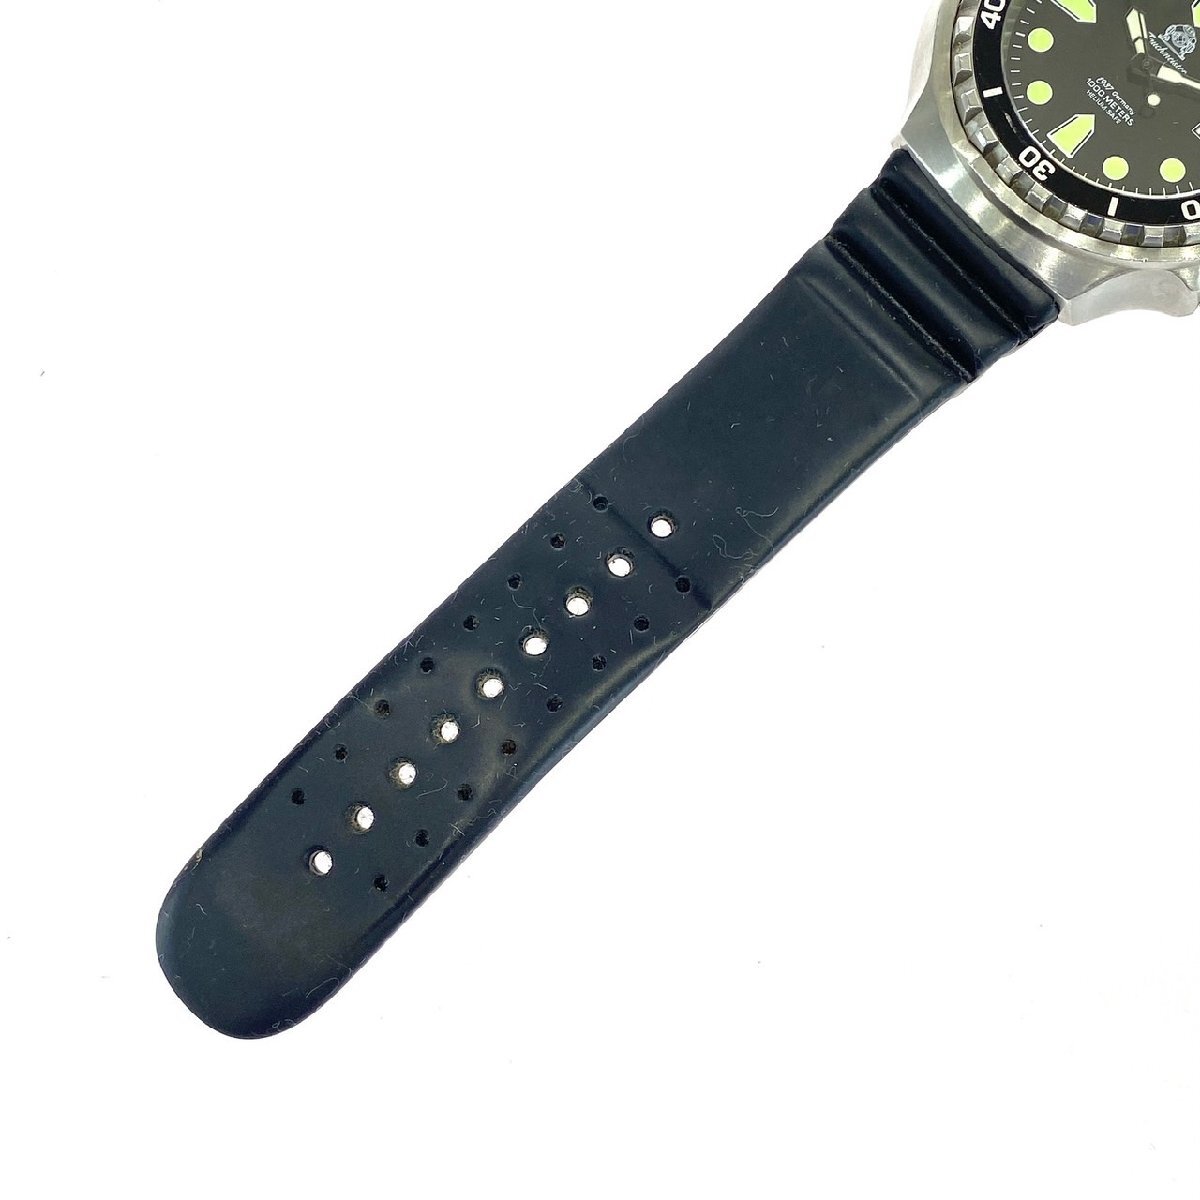 1 иен старт работа товар Tauchmeister 1937 фонарь Meister мужские наручные часы T0256 дайвер 1000M Date самозаводящиеся часы AT раунд чёрный циферблат 